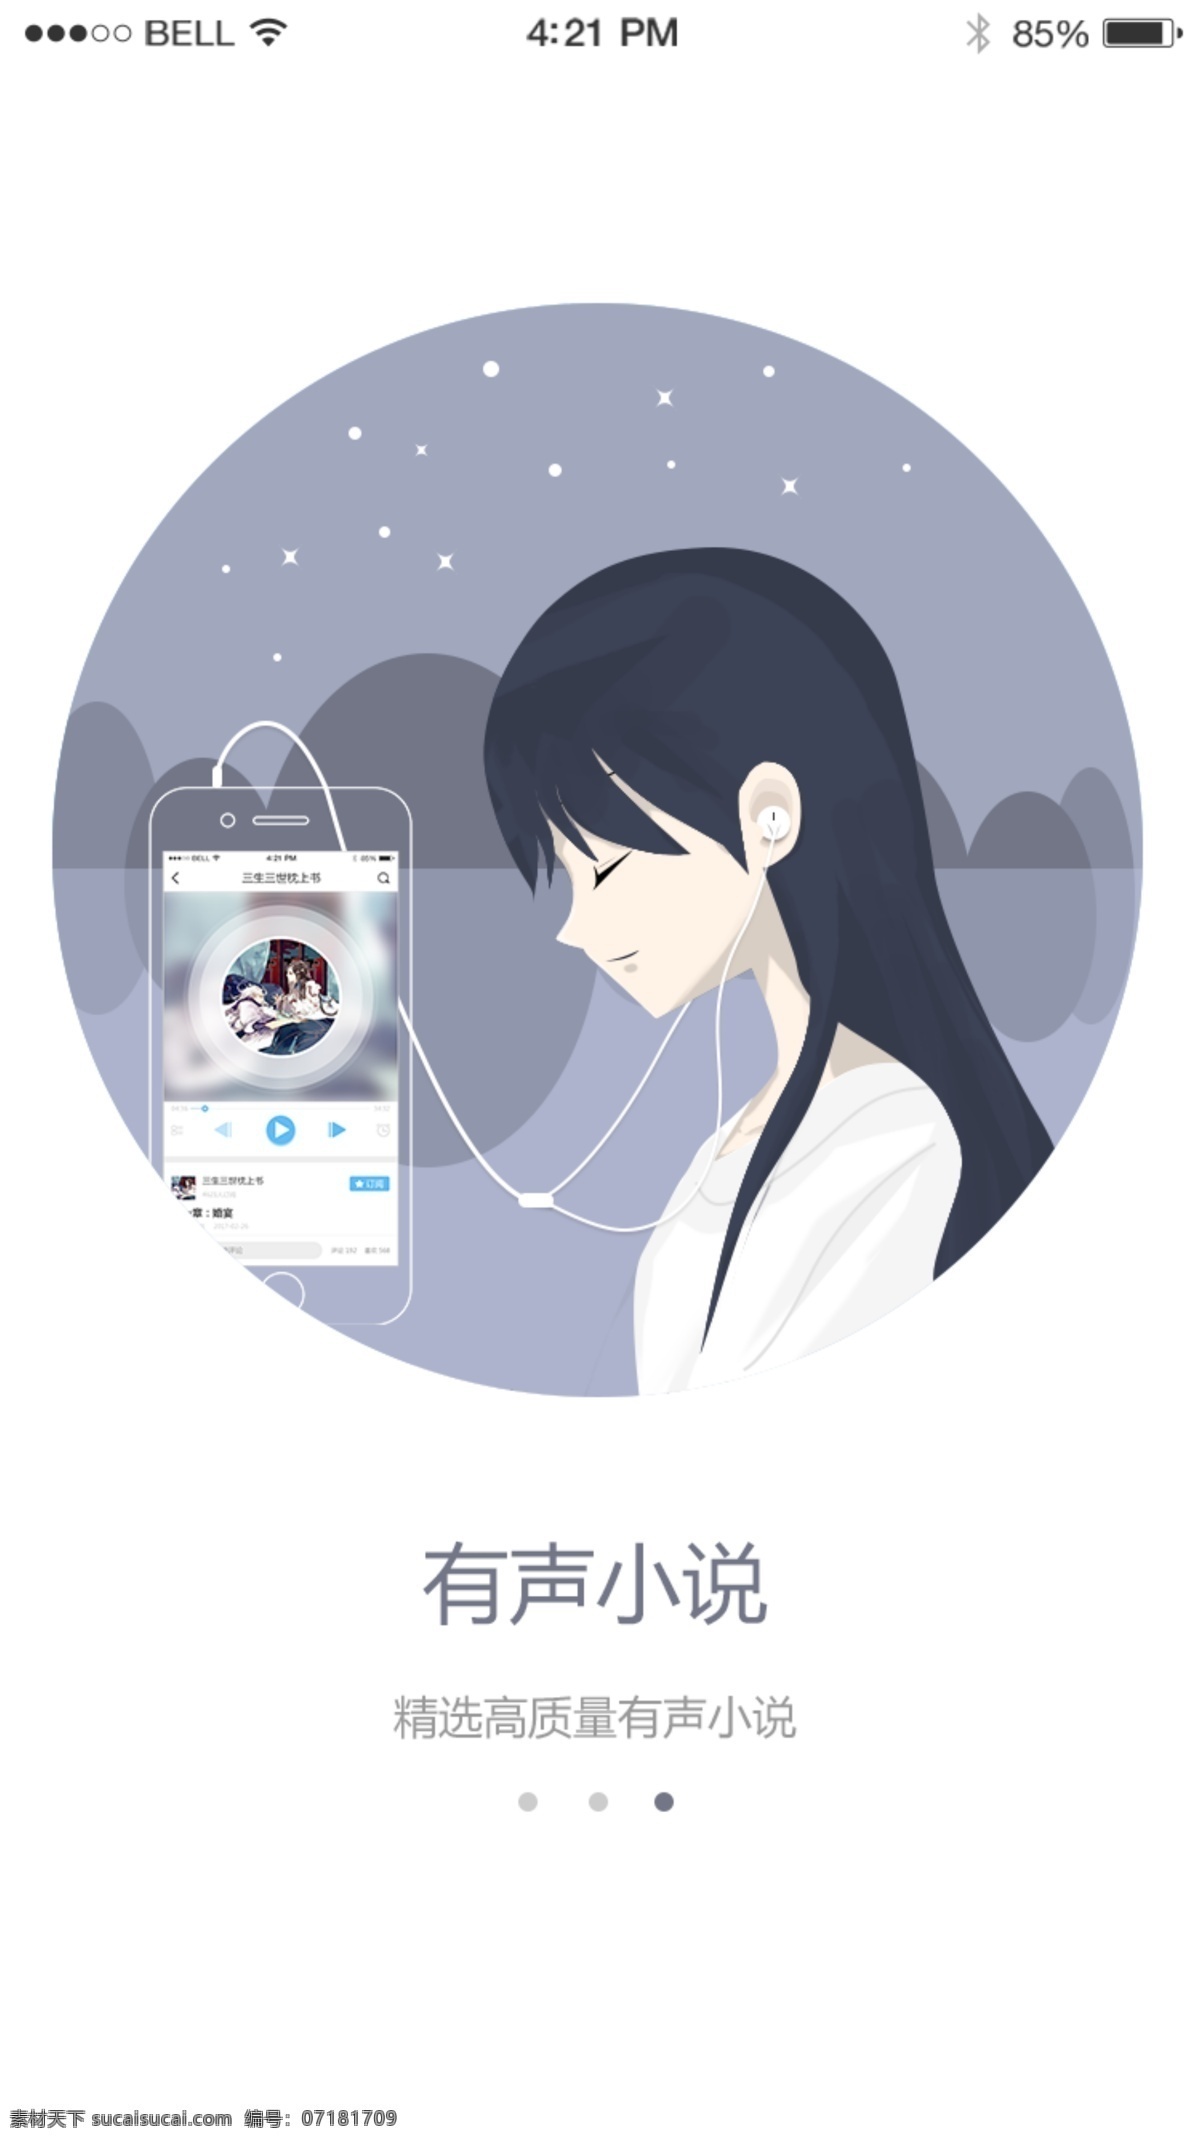 小说 app 引导 页 动漫 插画 ui 移动界面设计 手机界面